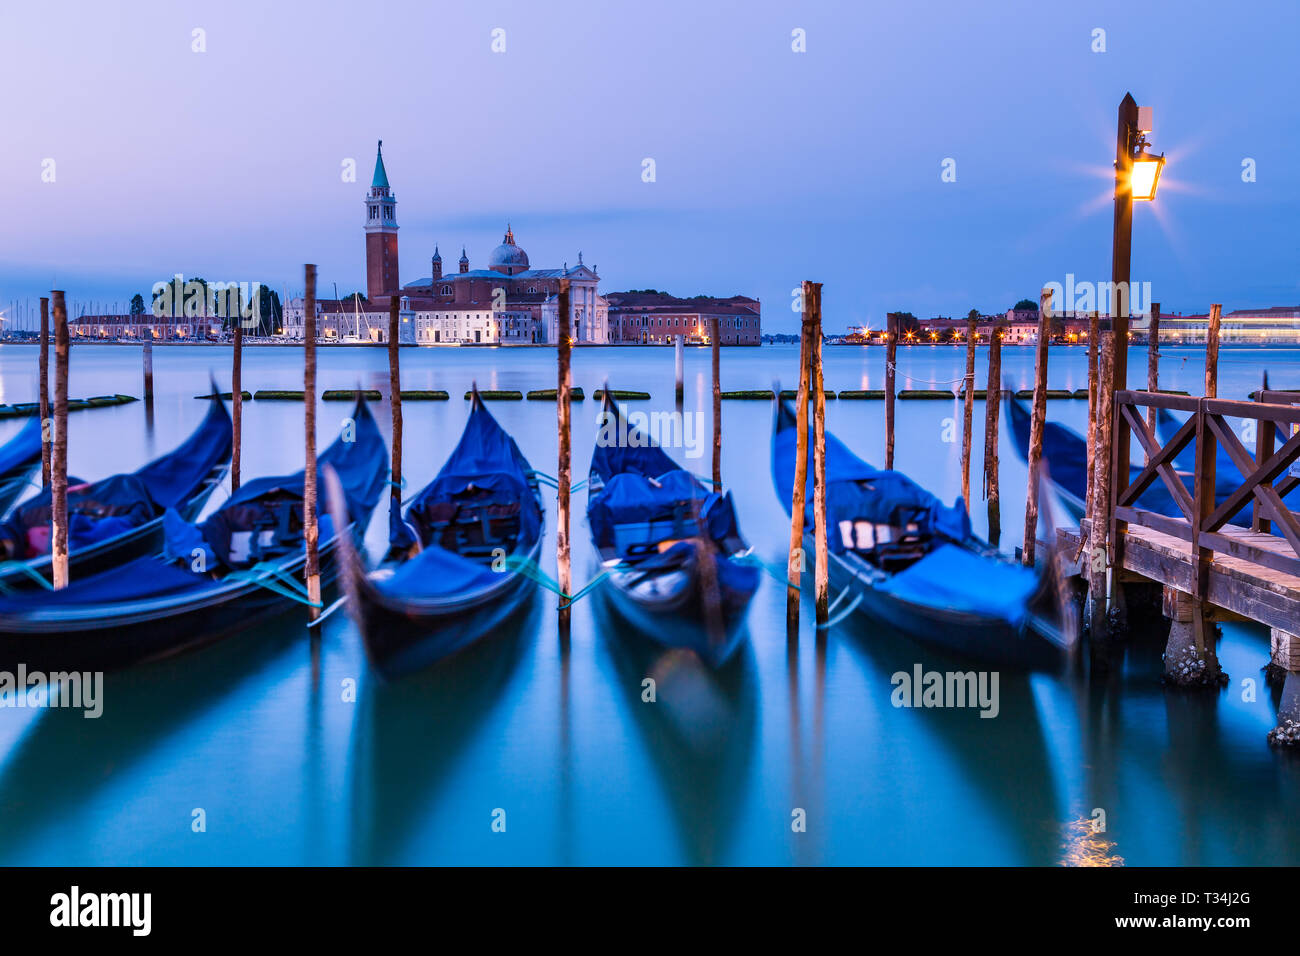 Gondole ormeggiata su un Canal, Venezia, Veneto, Italia Foto Stock